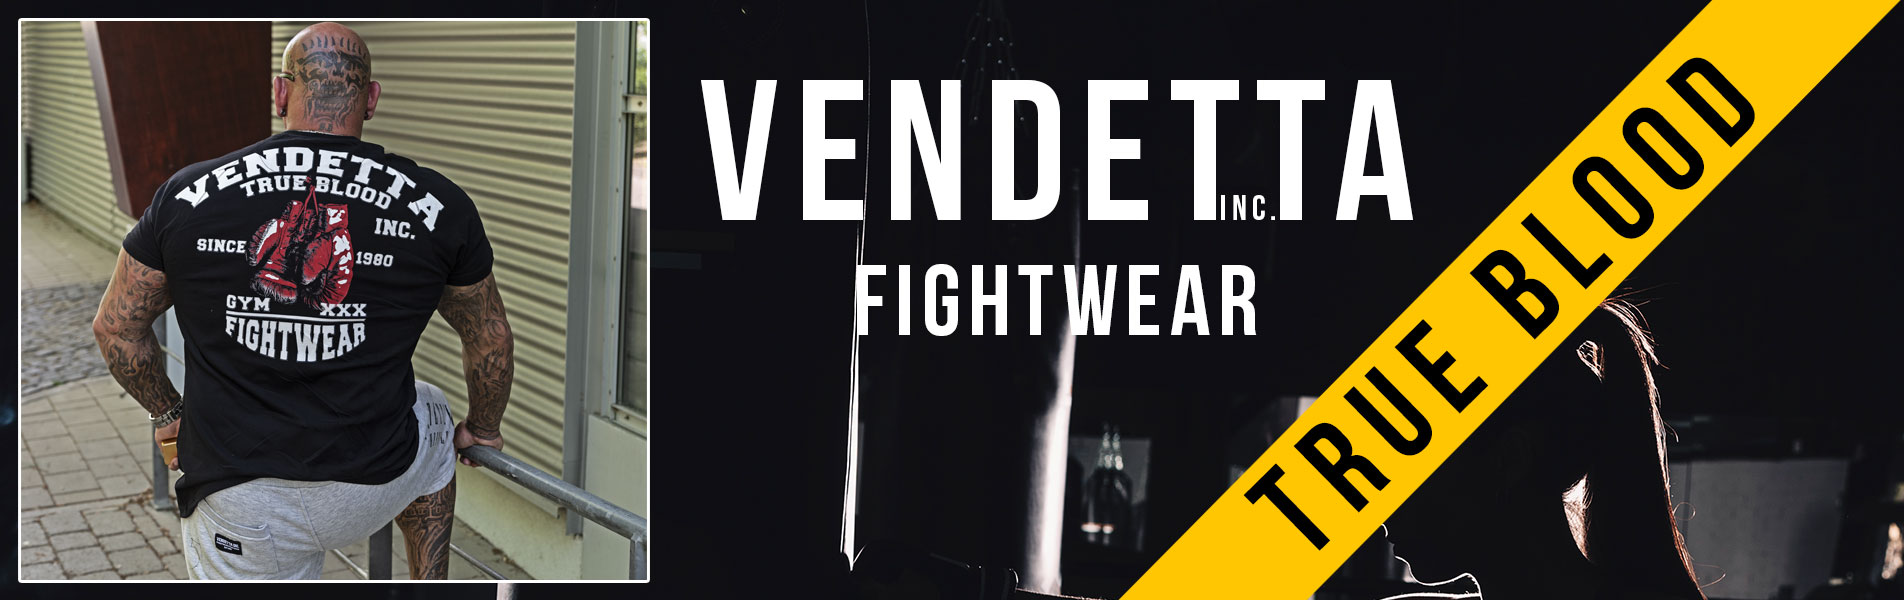 Vendetta True Blood Streetwear & Fightwear Shirt